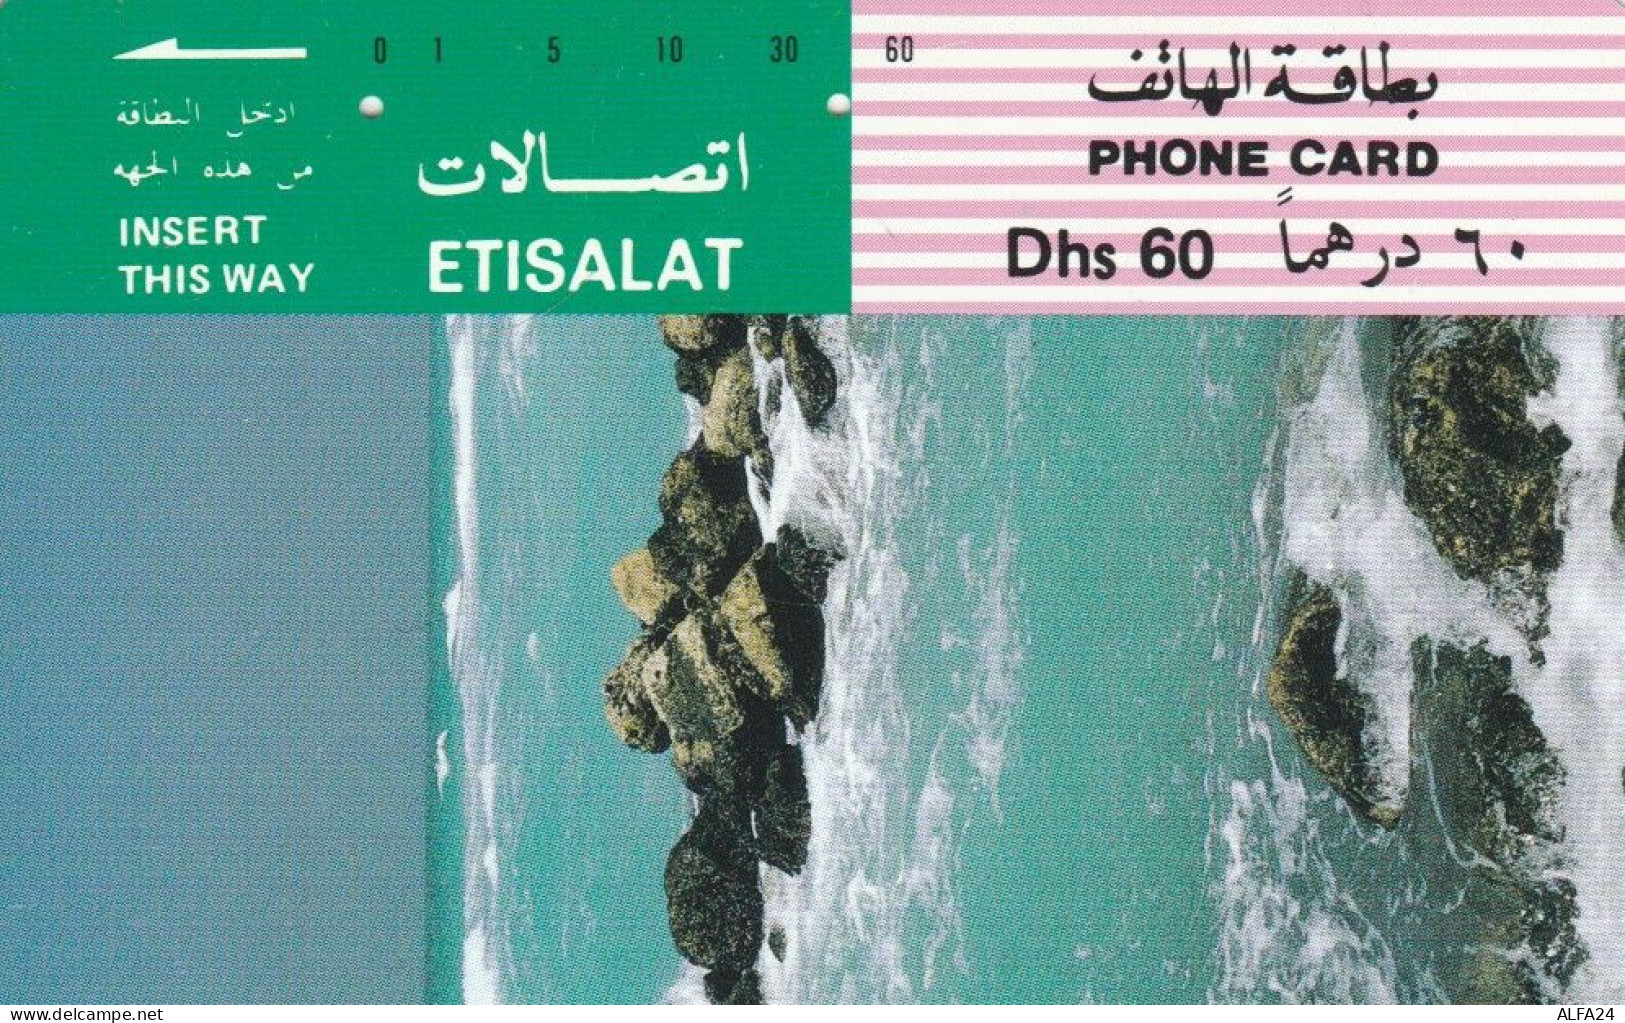 PHONE CARD EMIRATI ARABI (E53.16.4 - Ver. Arab. Emirate